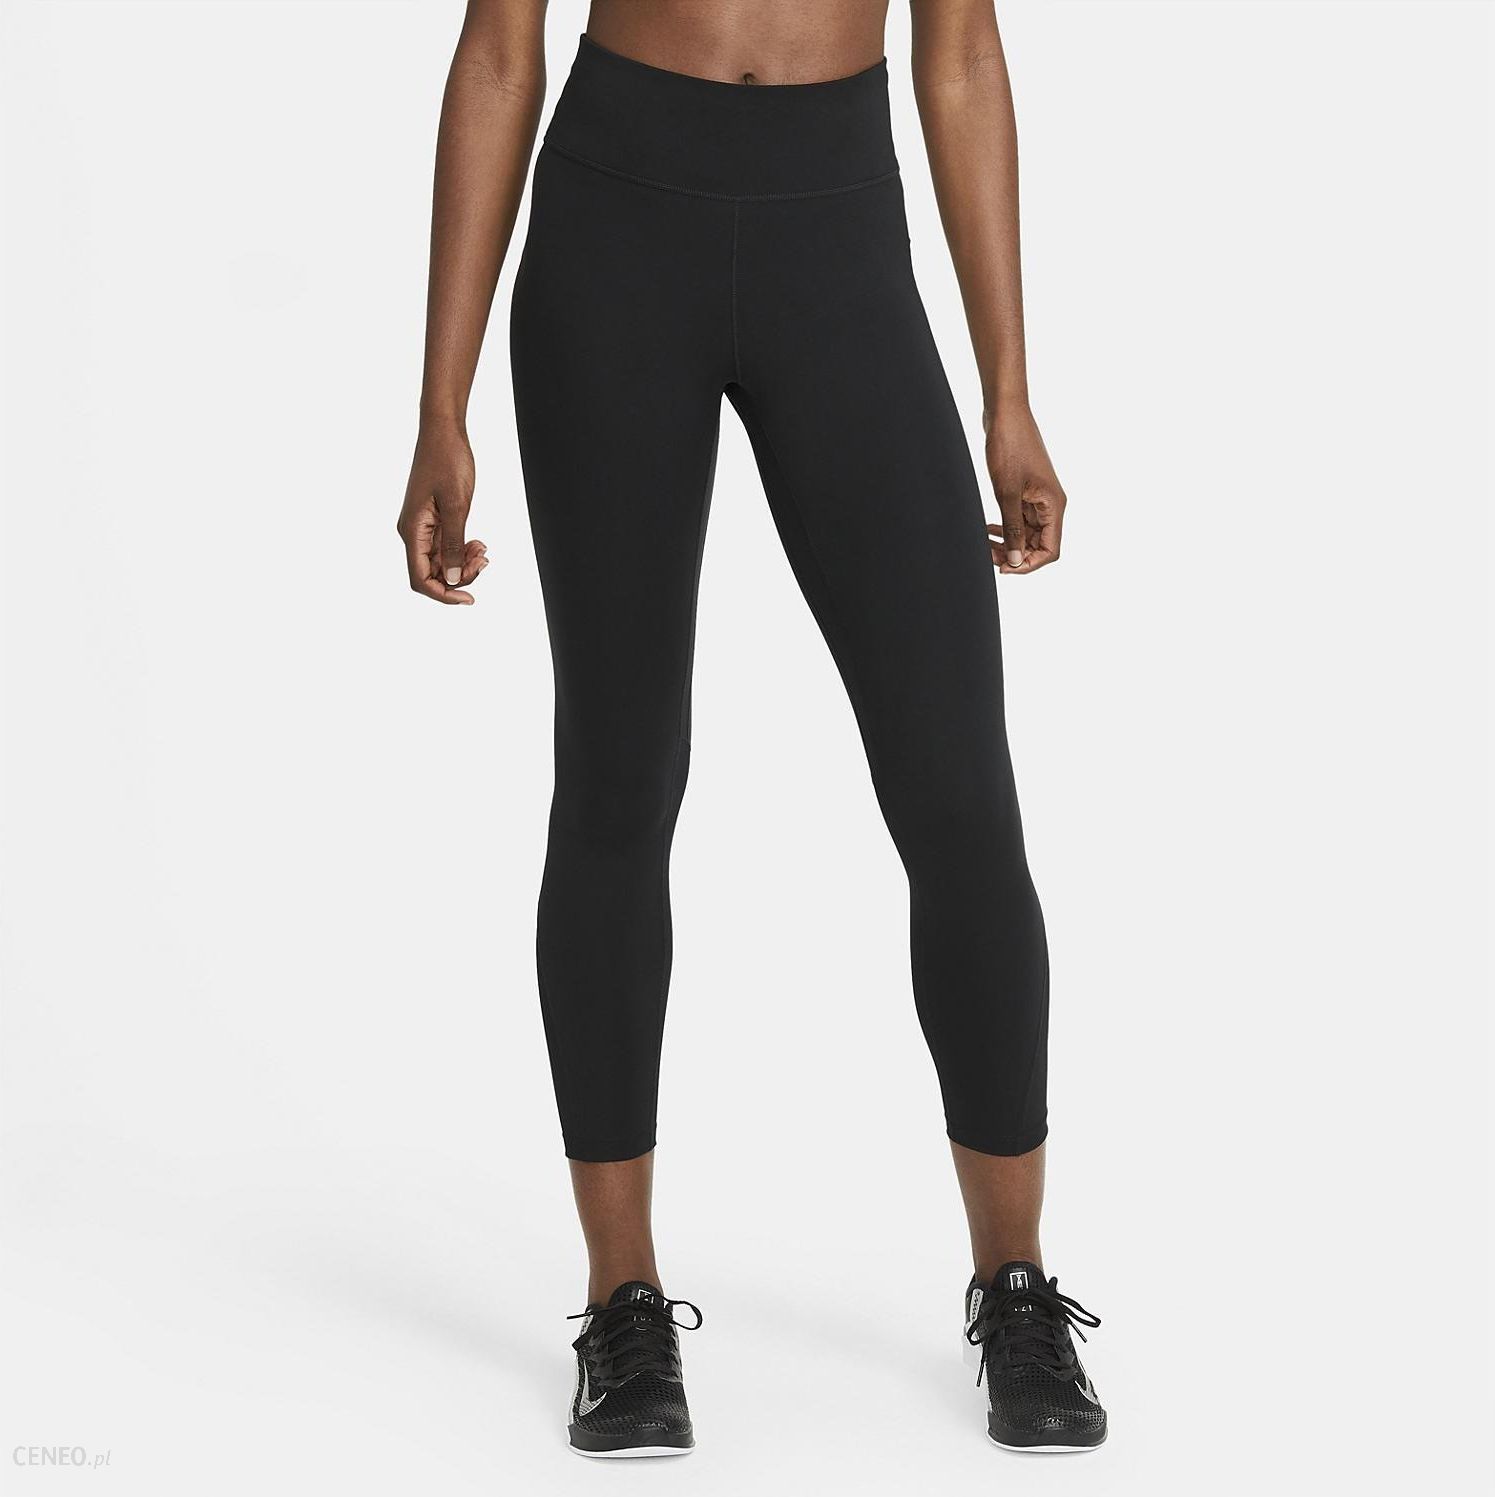 Legginsy damskie Nike Dri Fit One HR Tight czarne DM7278 010 XL